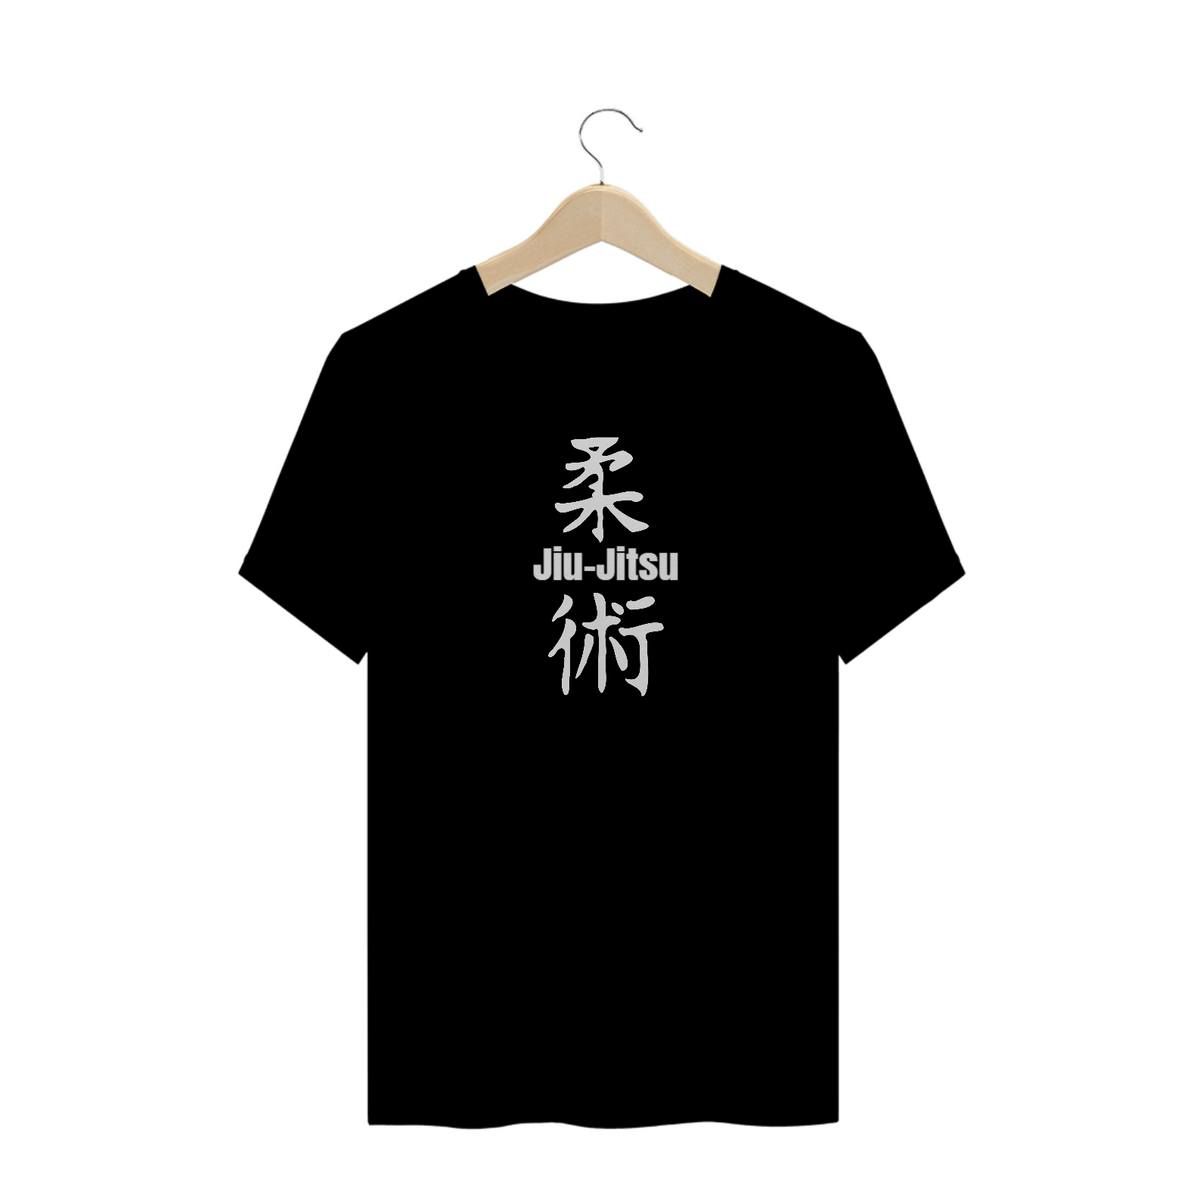 Nome do produto: Jiu-jitsu - Camisa Jiu-jitsu Letra